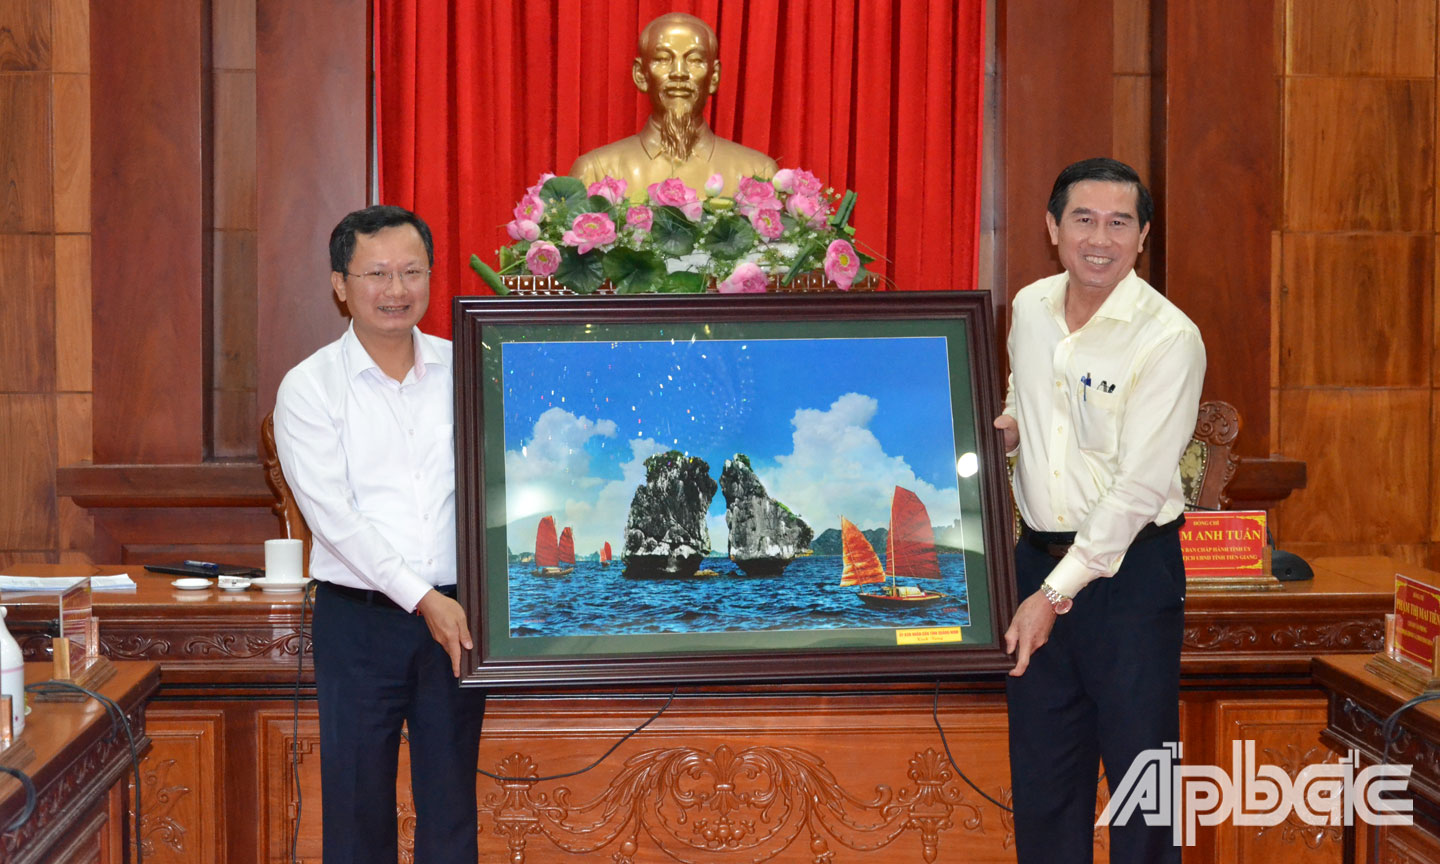 UBND tỉnh Quảng Ninh tặng quà lưu niệm cho UBND tỉnh Tiền Giang.